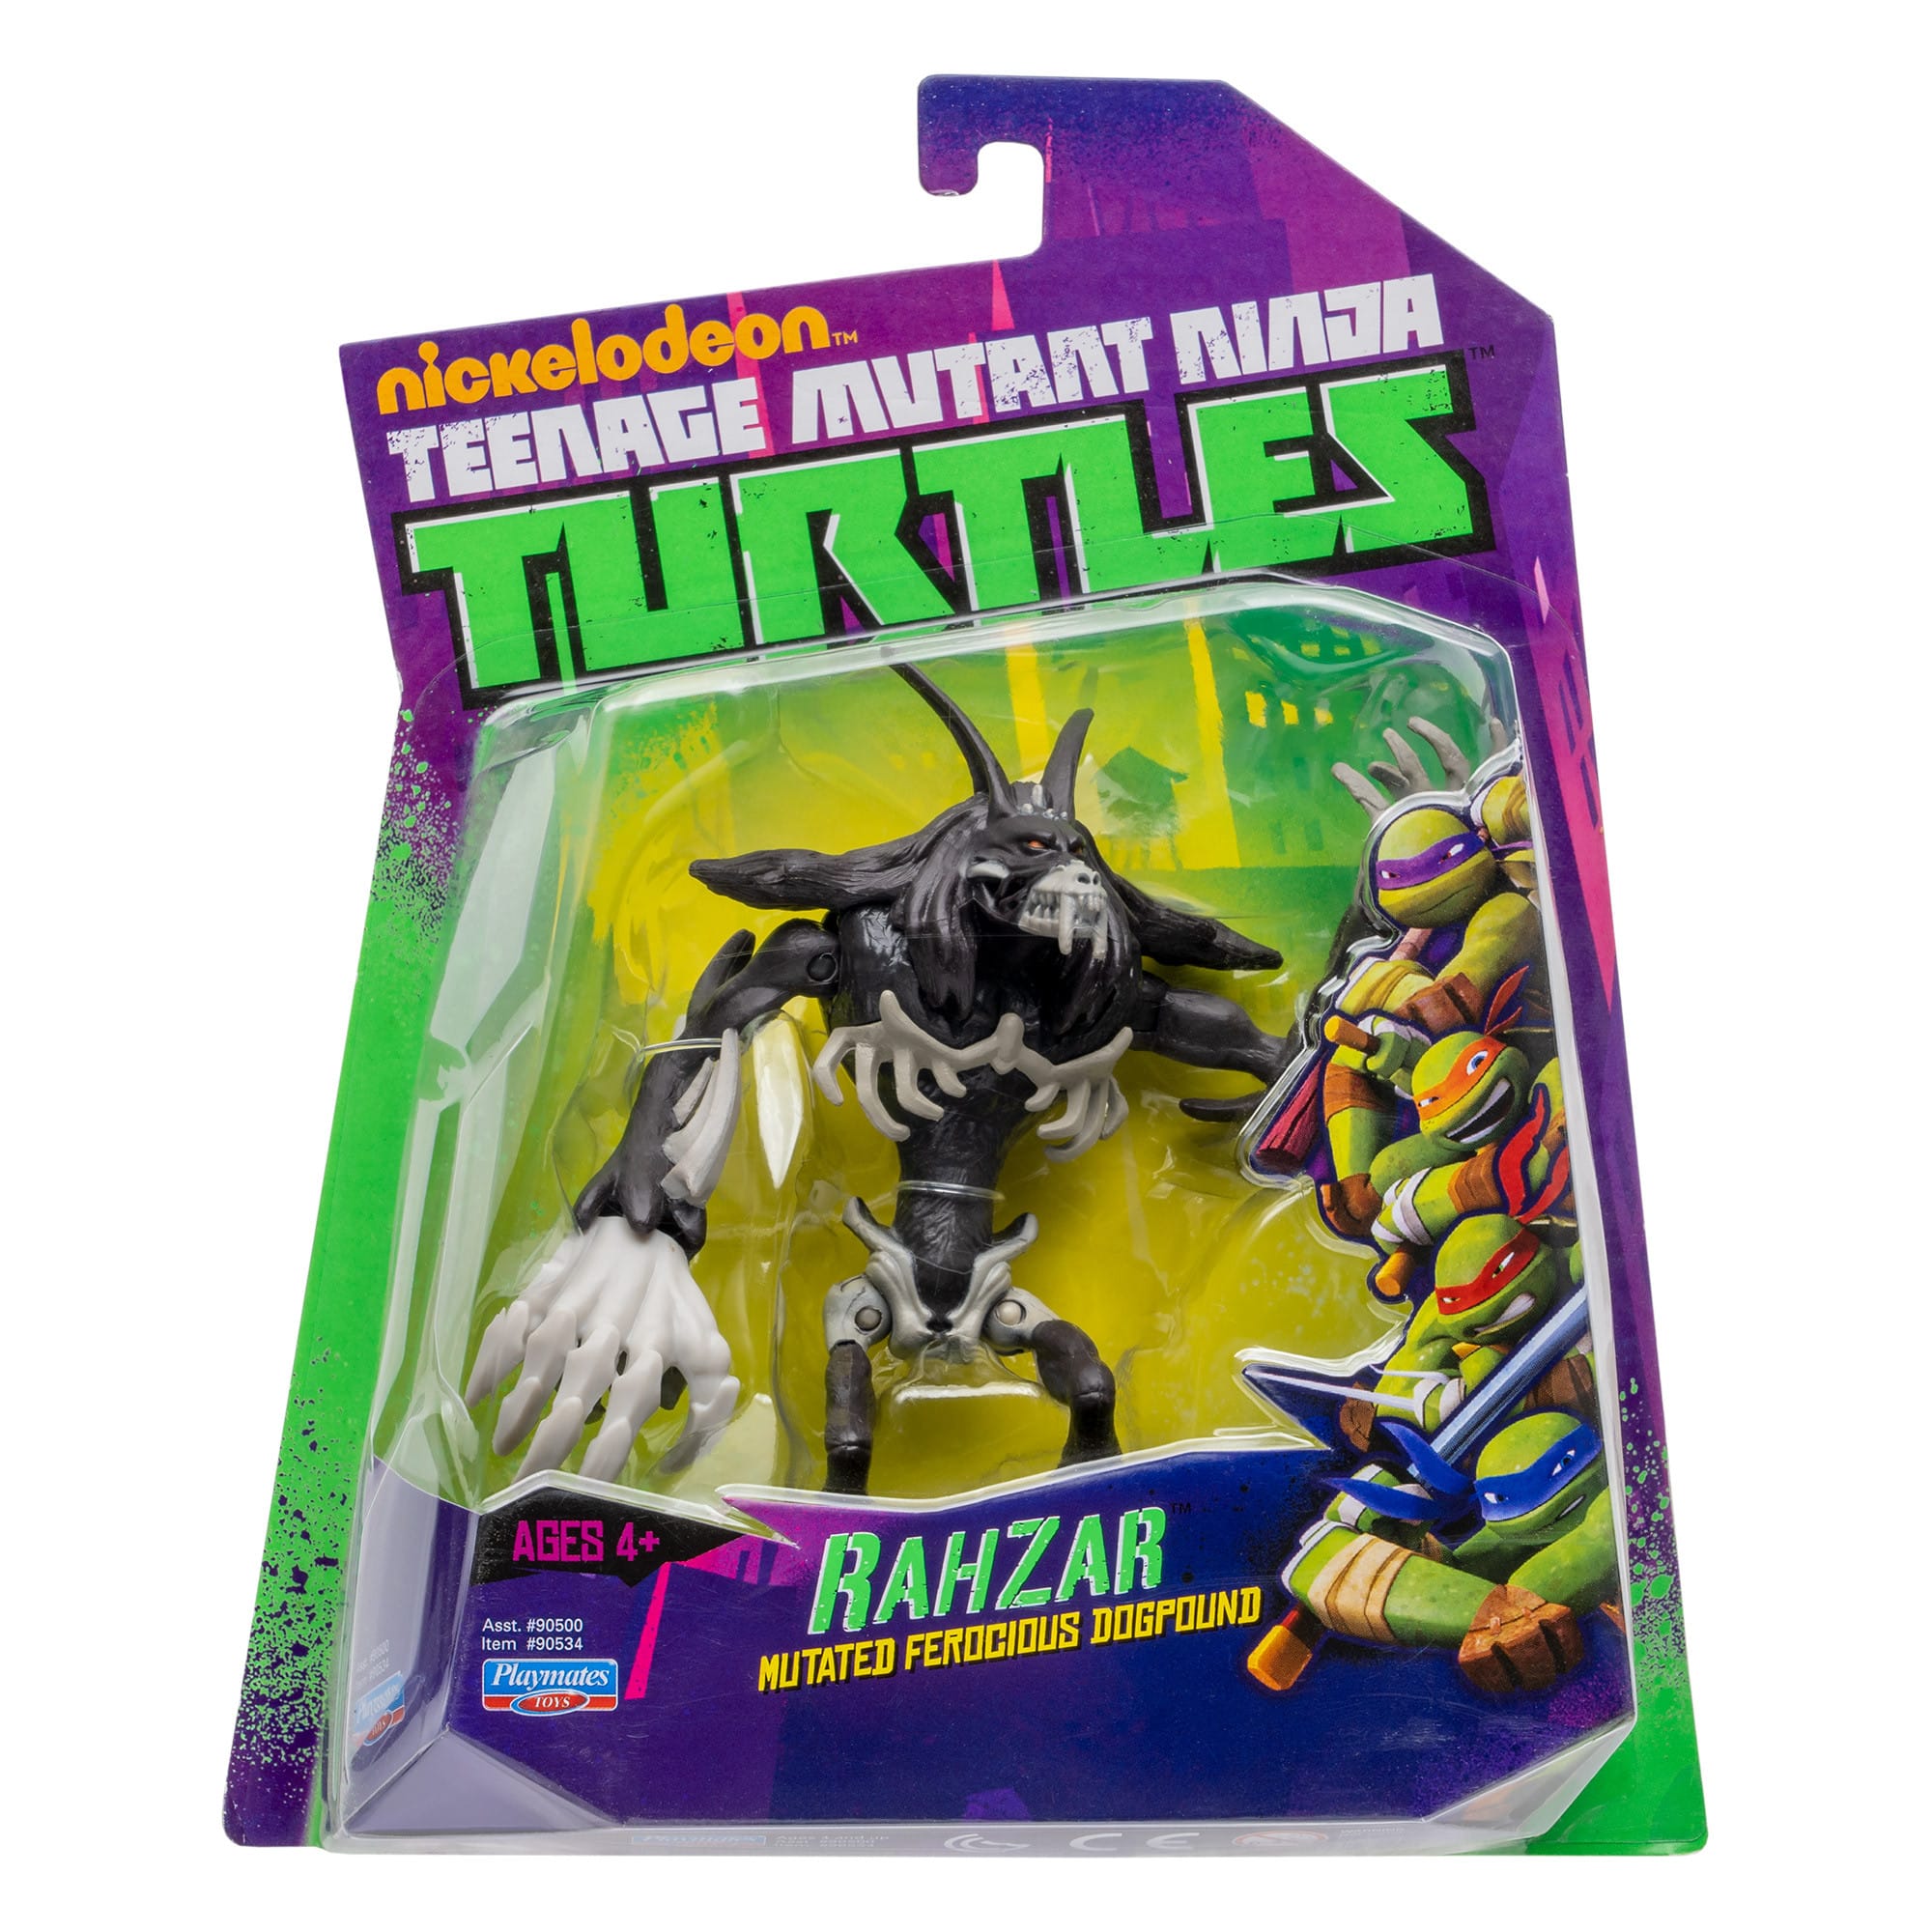 Teenage Mutant Ninja Turtles - Rahzar Figure